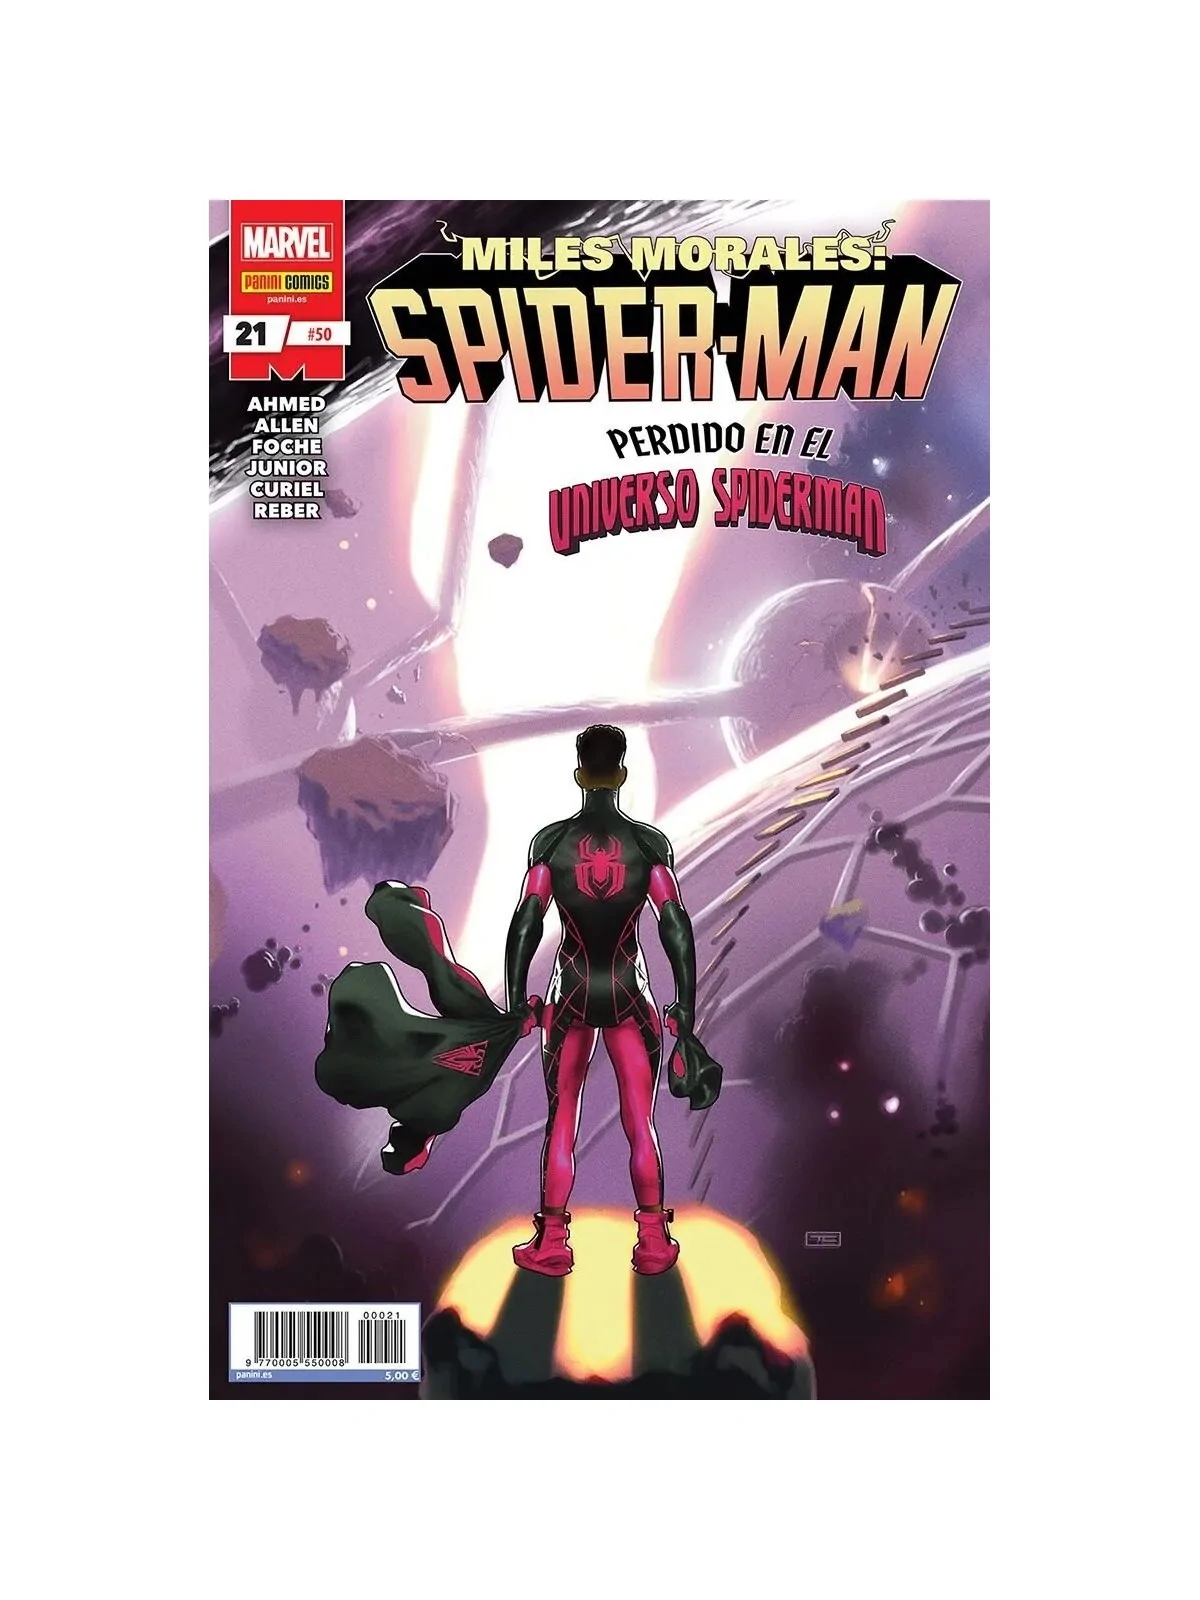 Comprar Miles Morales: Spider-Man 21 barato al mejor precio 4,75 € de 